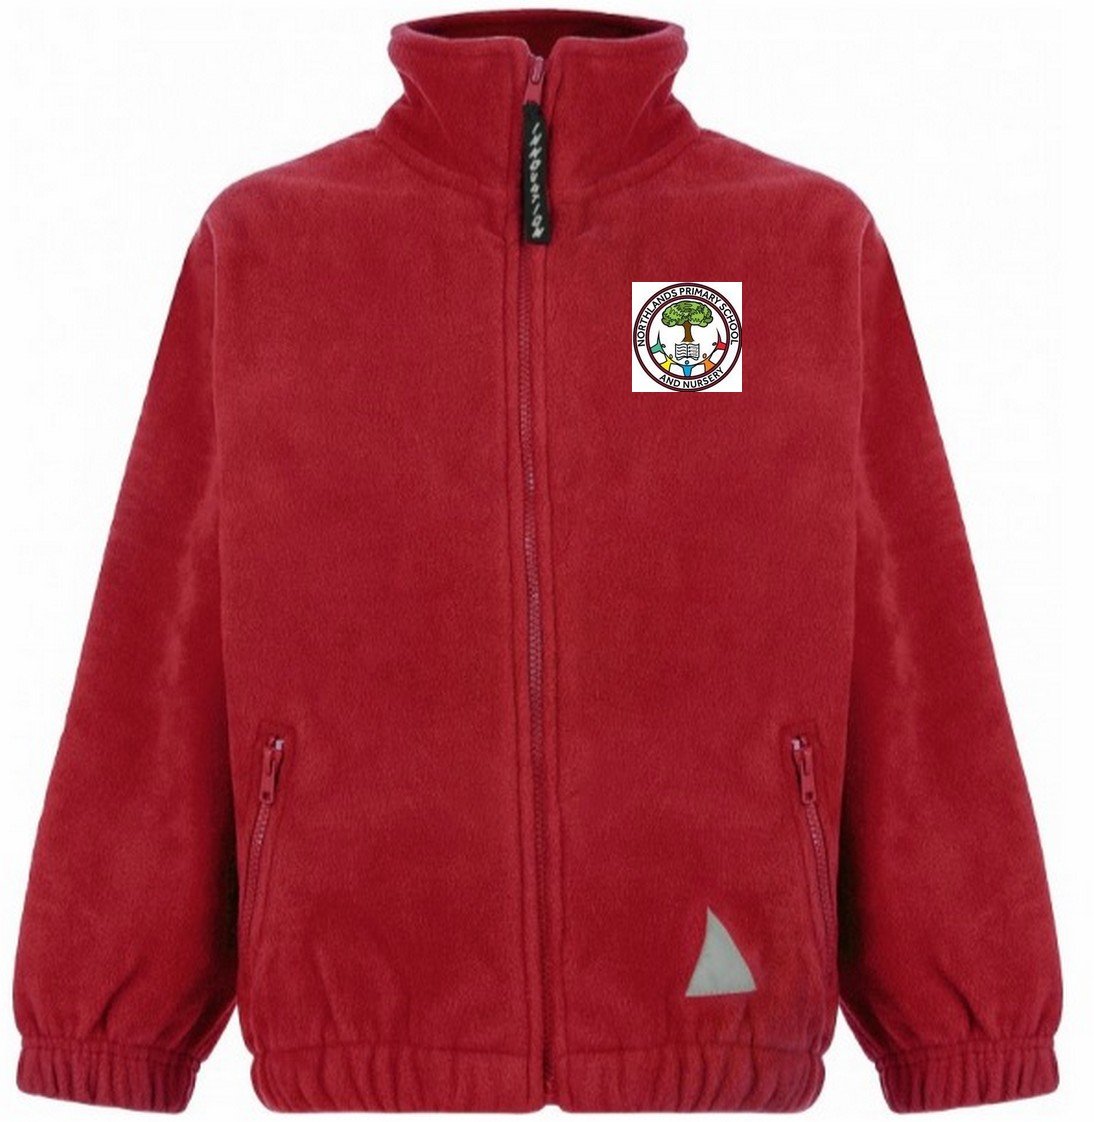 Northlands Junior School - Red Fleece Jacket with School Logo - Schoolwear Centres | School Uniform Centres